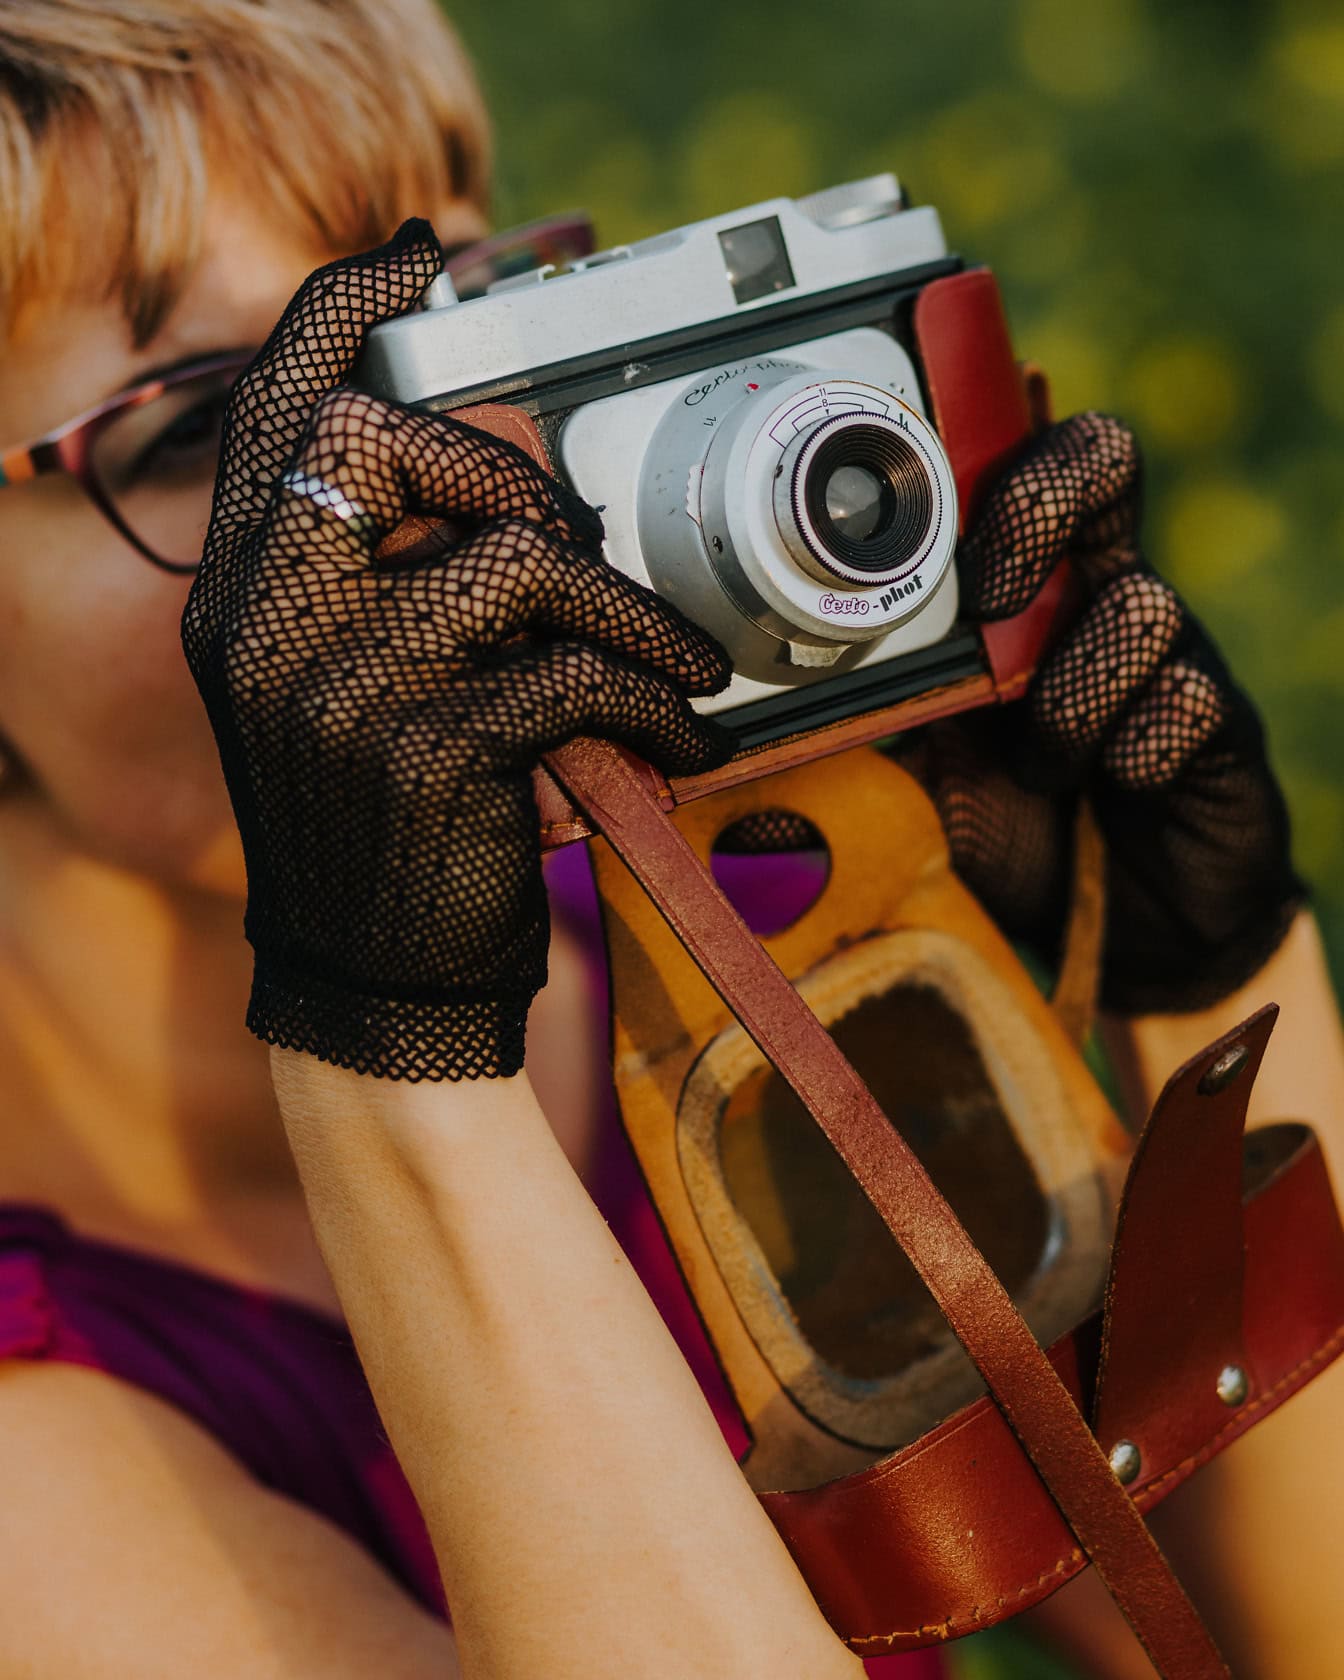 Una dama con elegantes guantes de encaje sostiene una vieja cámara analógica